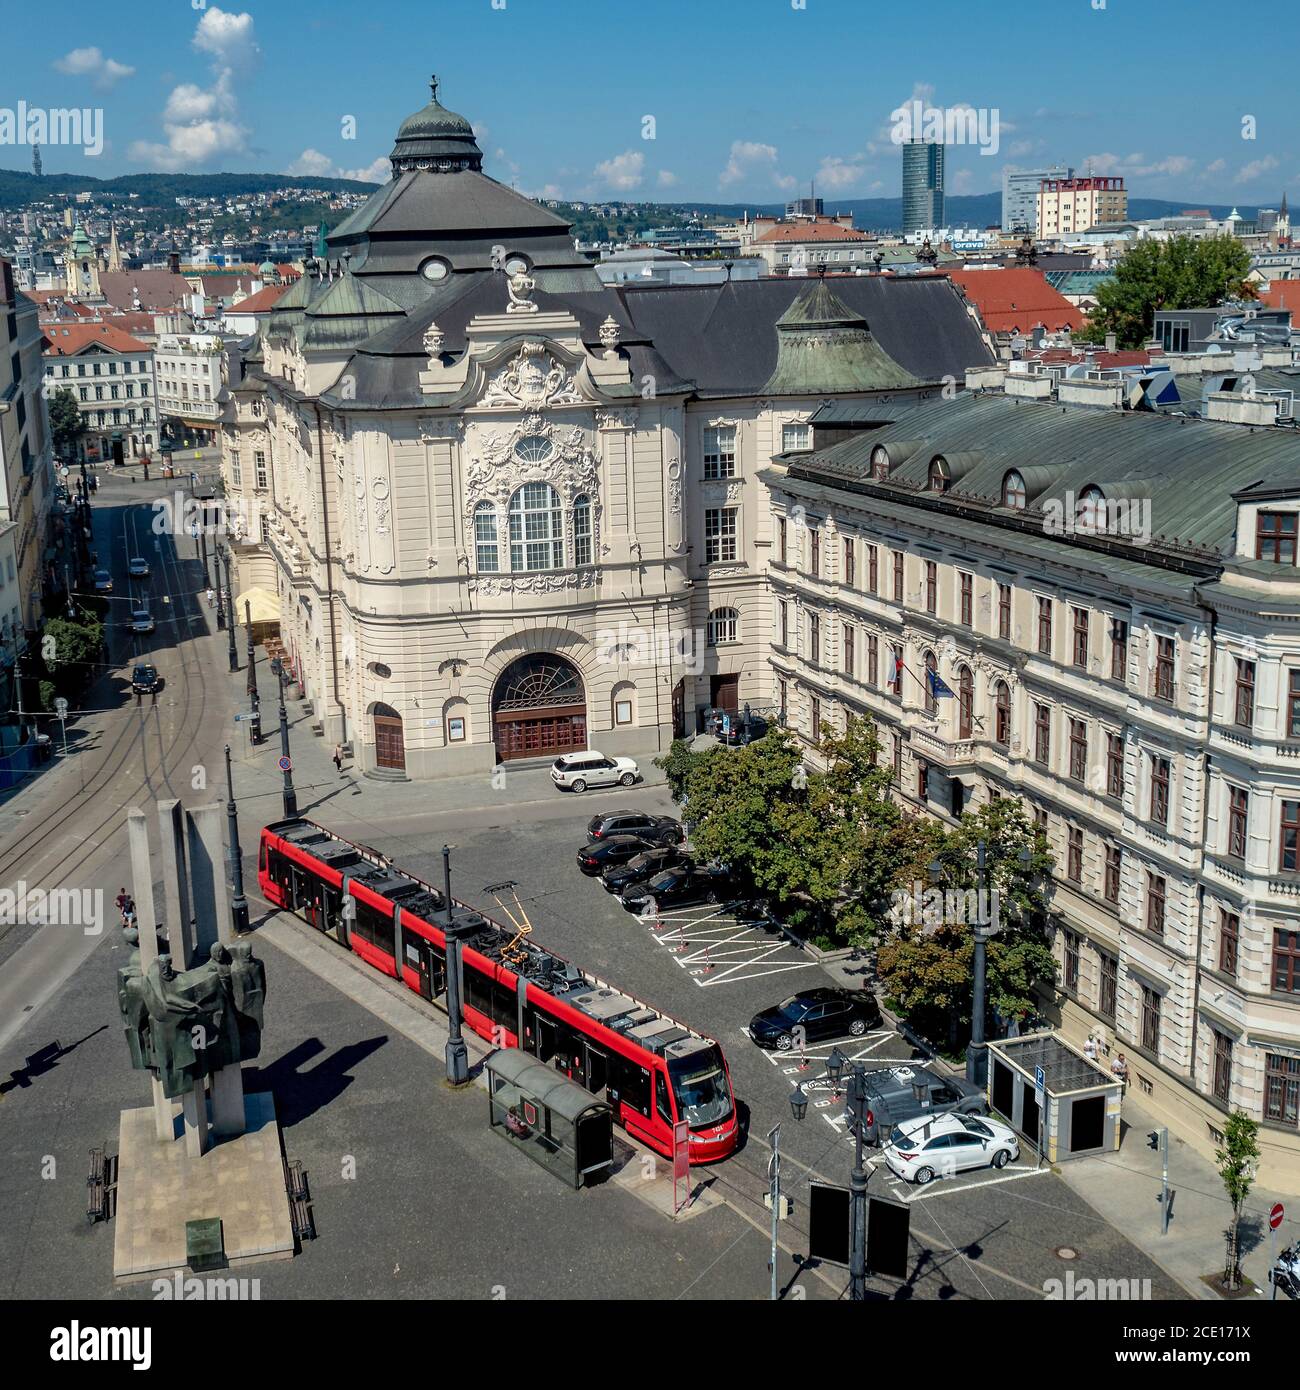 Vue sur le bâtiment de l'orchestre philharmonique de bratislava avec les rues environnantes, capitale de la Slovaquie depuis le nouveau carrousel de la ville pendant les journées chaudes d'été Banque D'Images